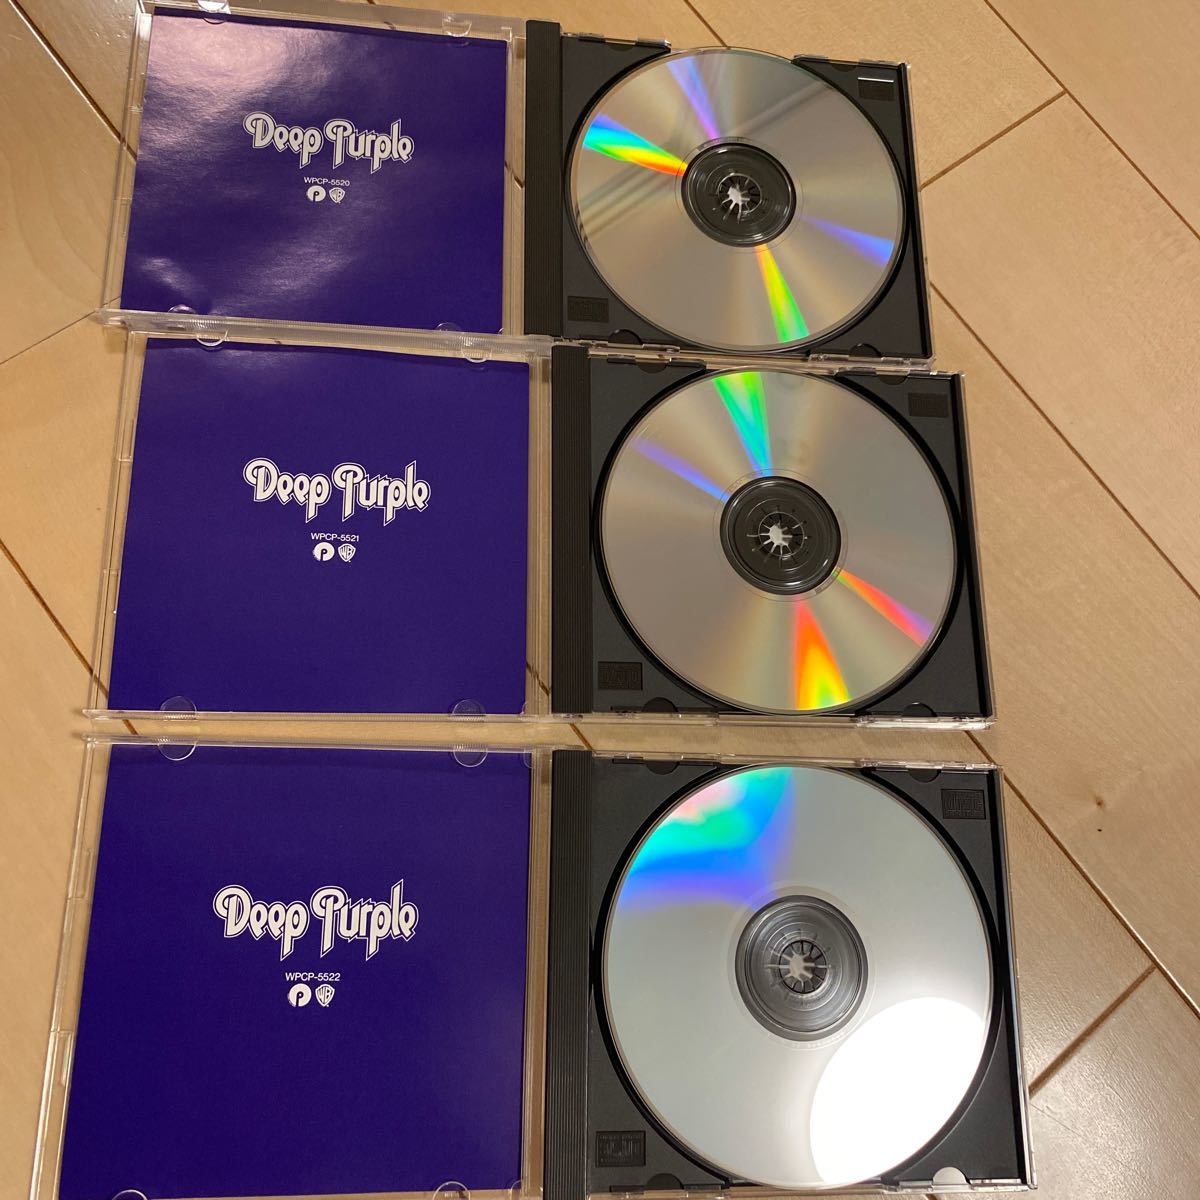 Deep Purple / Purple Chronicle ディープパープル結成25周年記念ベストセレクション3枚組CD